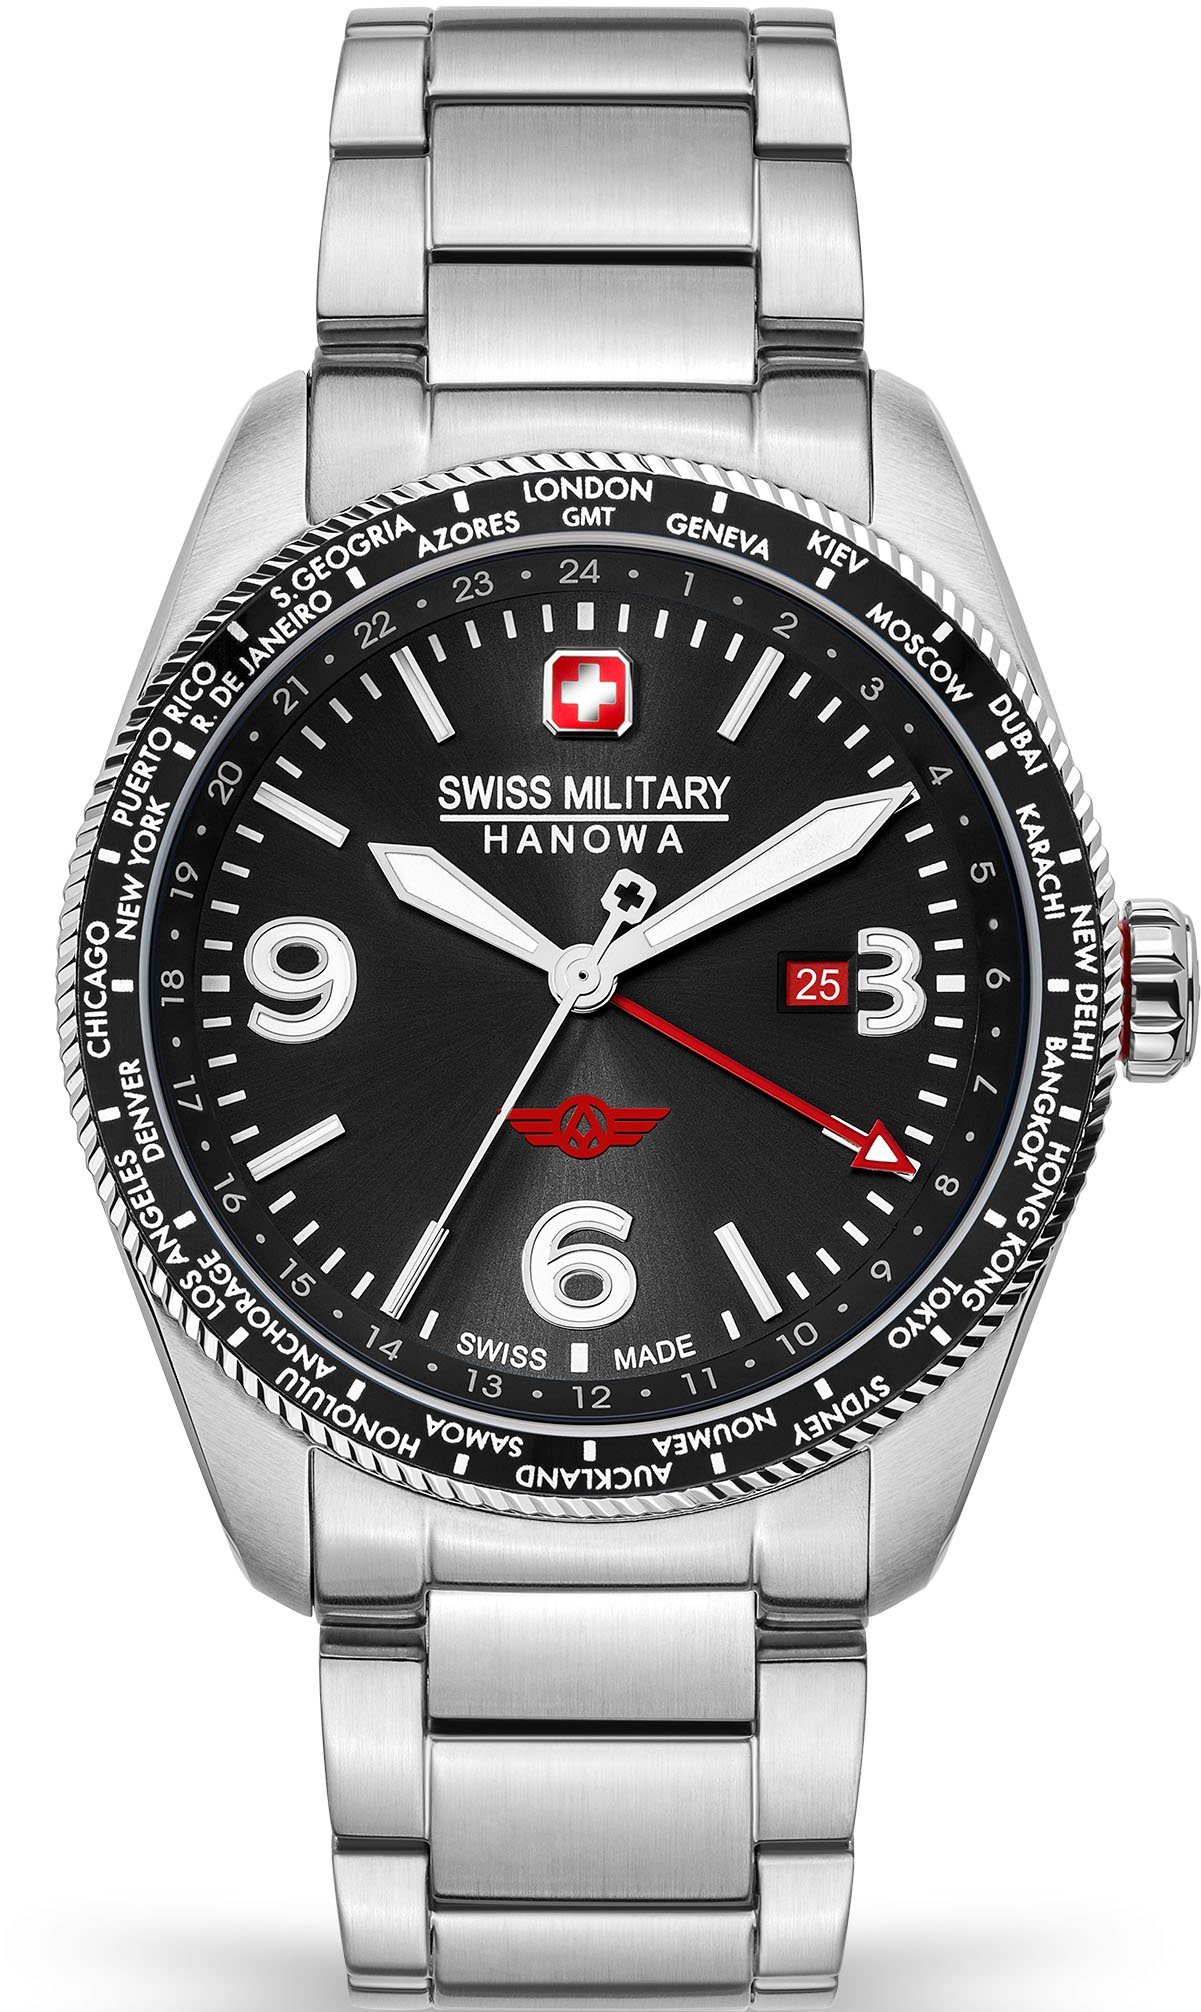 Swiss Military Hanowa Schweizer Uhr CITY HAWK, SMWGH2100904 schwarz, silber